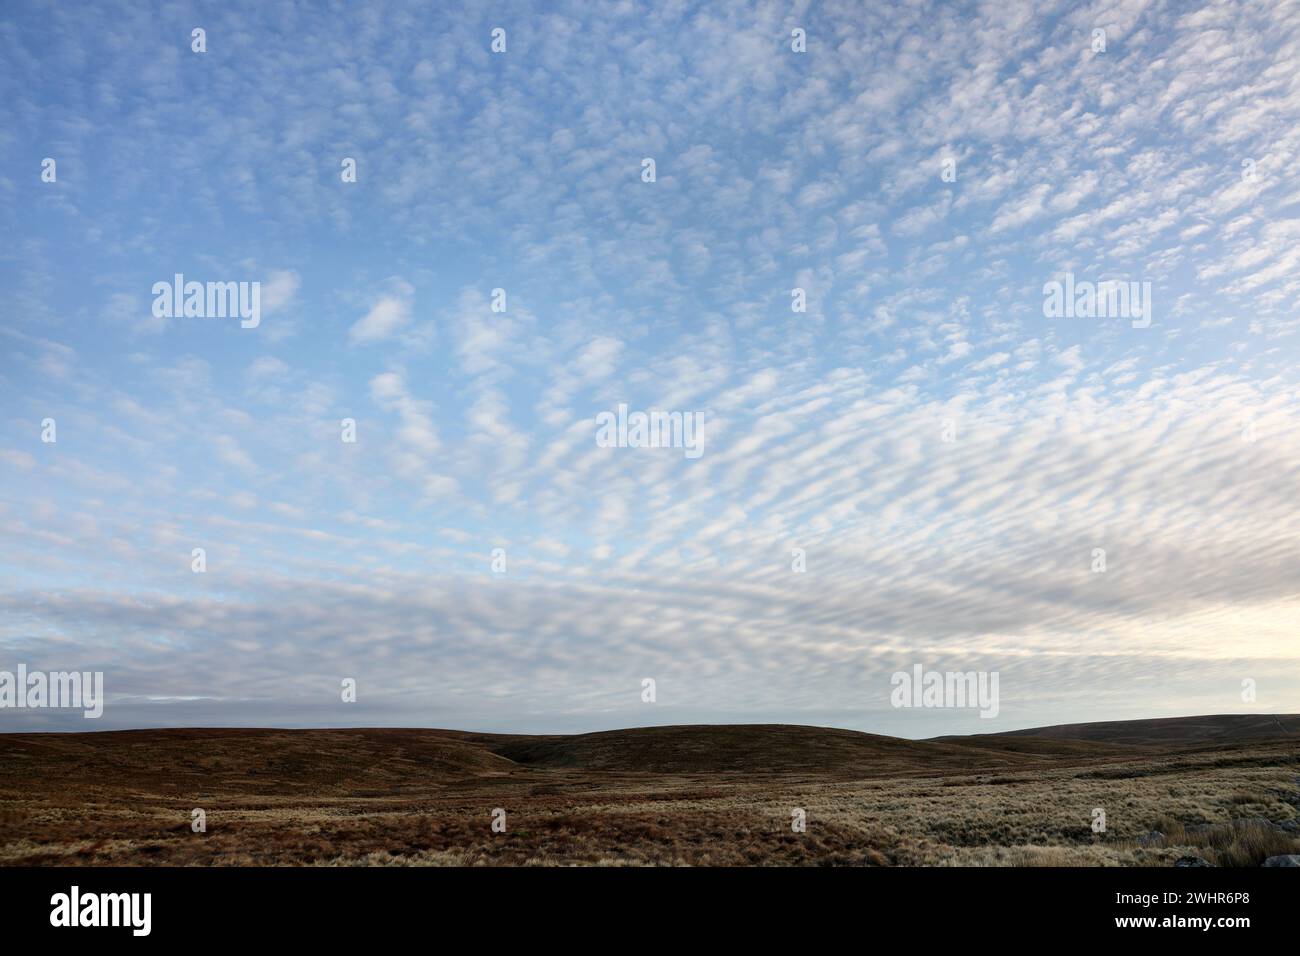 Maquereau Sky. L'apparition de tels nuages, sont un signe d'aggravation du temps à venir, Yorkshire Dales, Angleterre, Royaume-Uni Banque D'Images